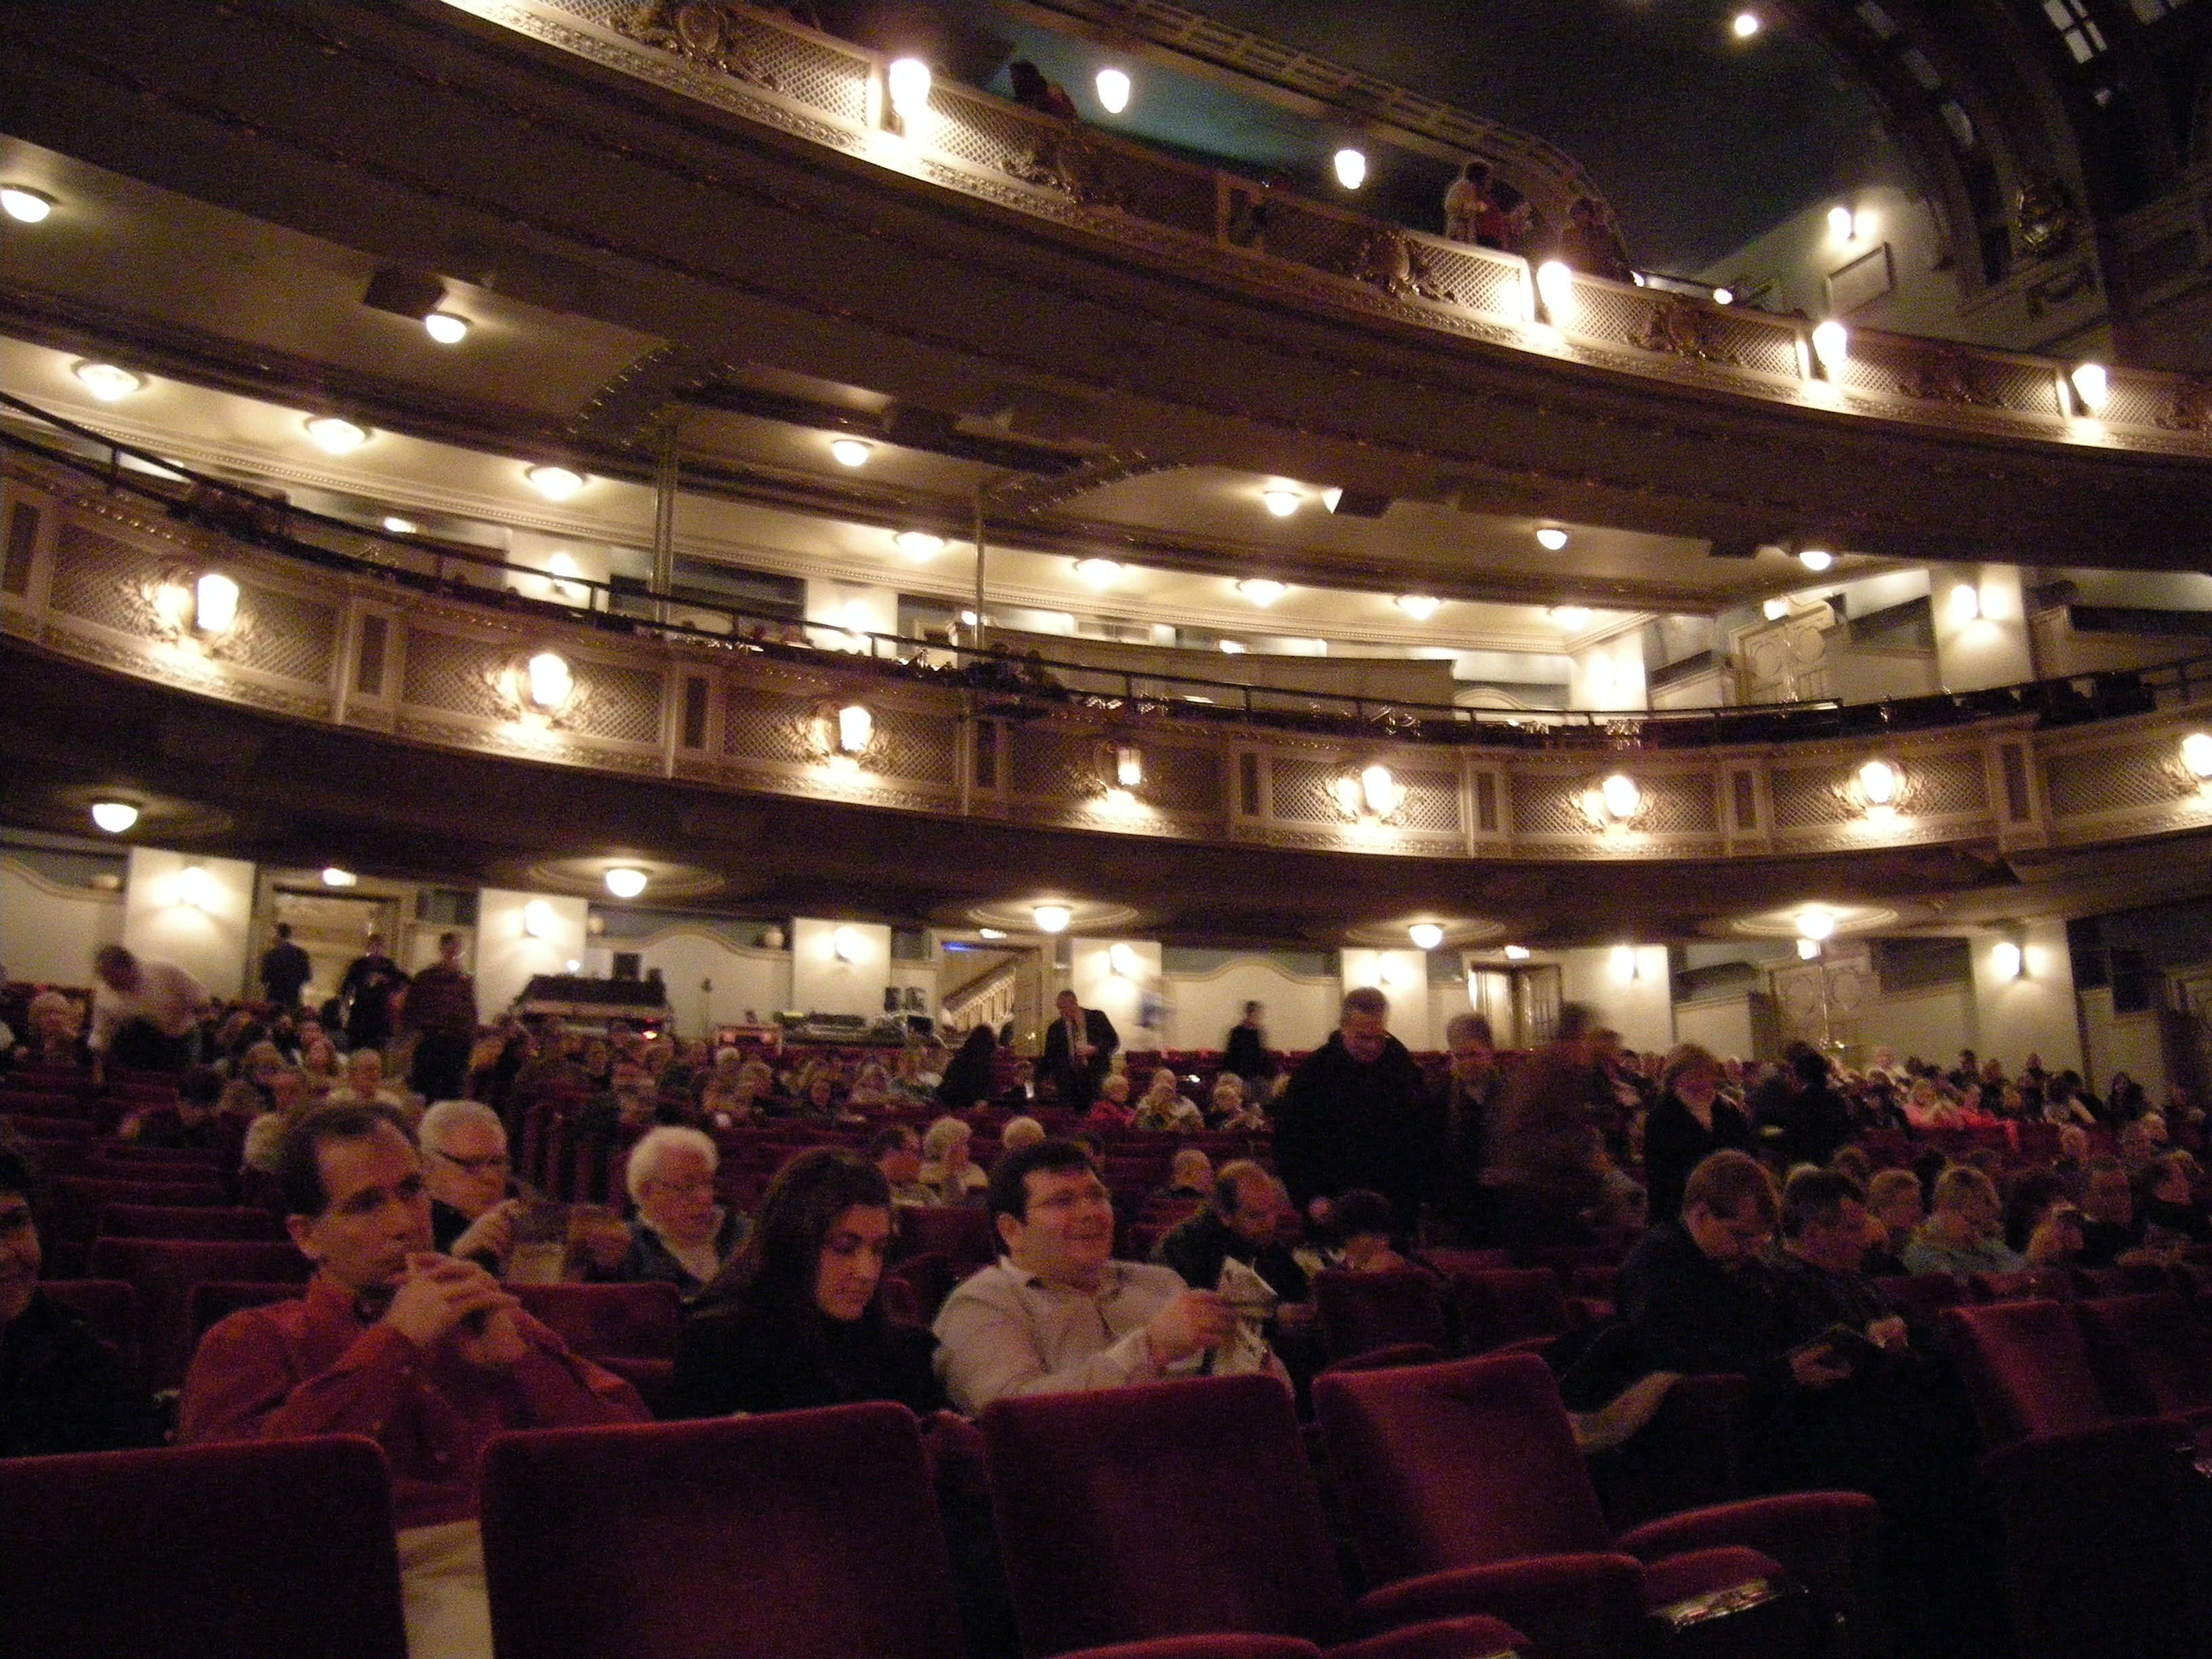 File:Dallas - Majestic Theatre hall 01.jpg - Wikipedia